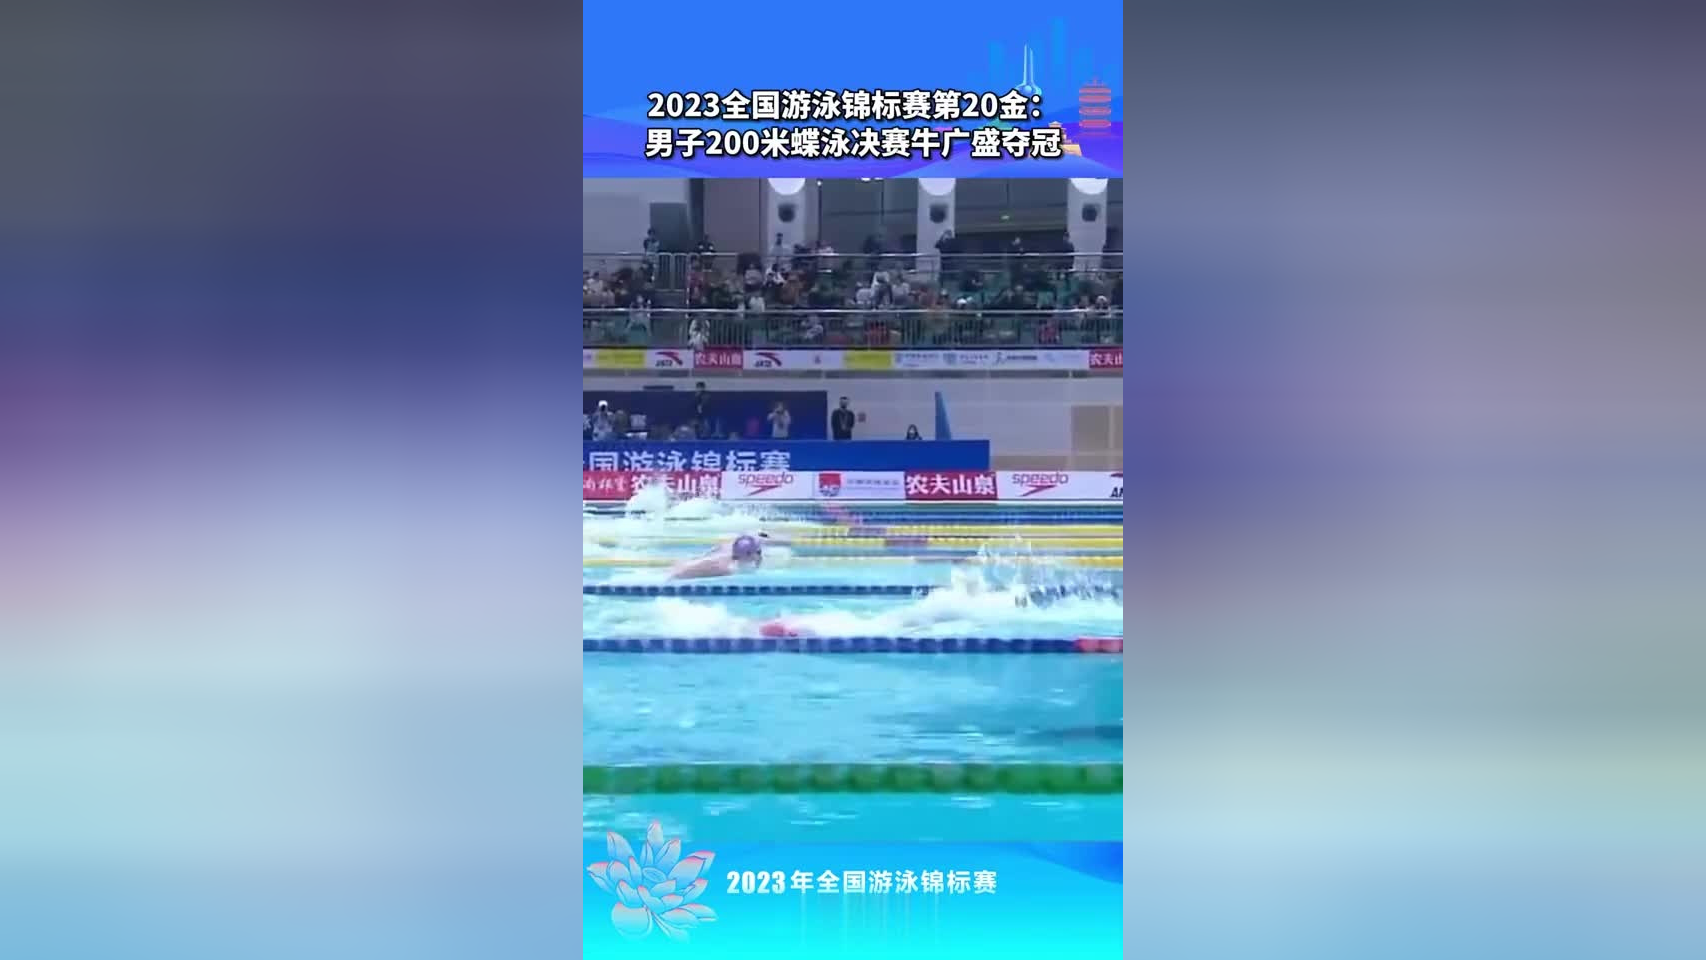 2023年全国游泳锦标赛在济南盛大开幕覃海洋张雨霏夺冠